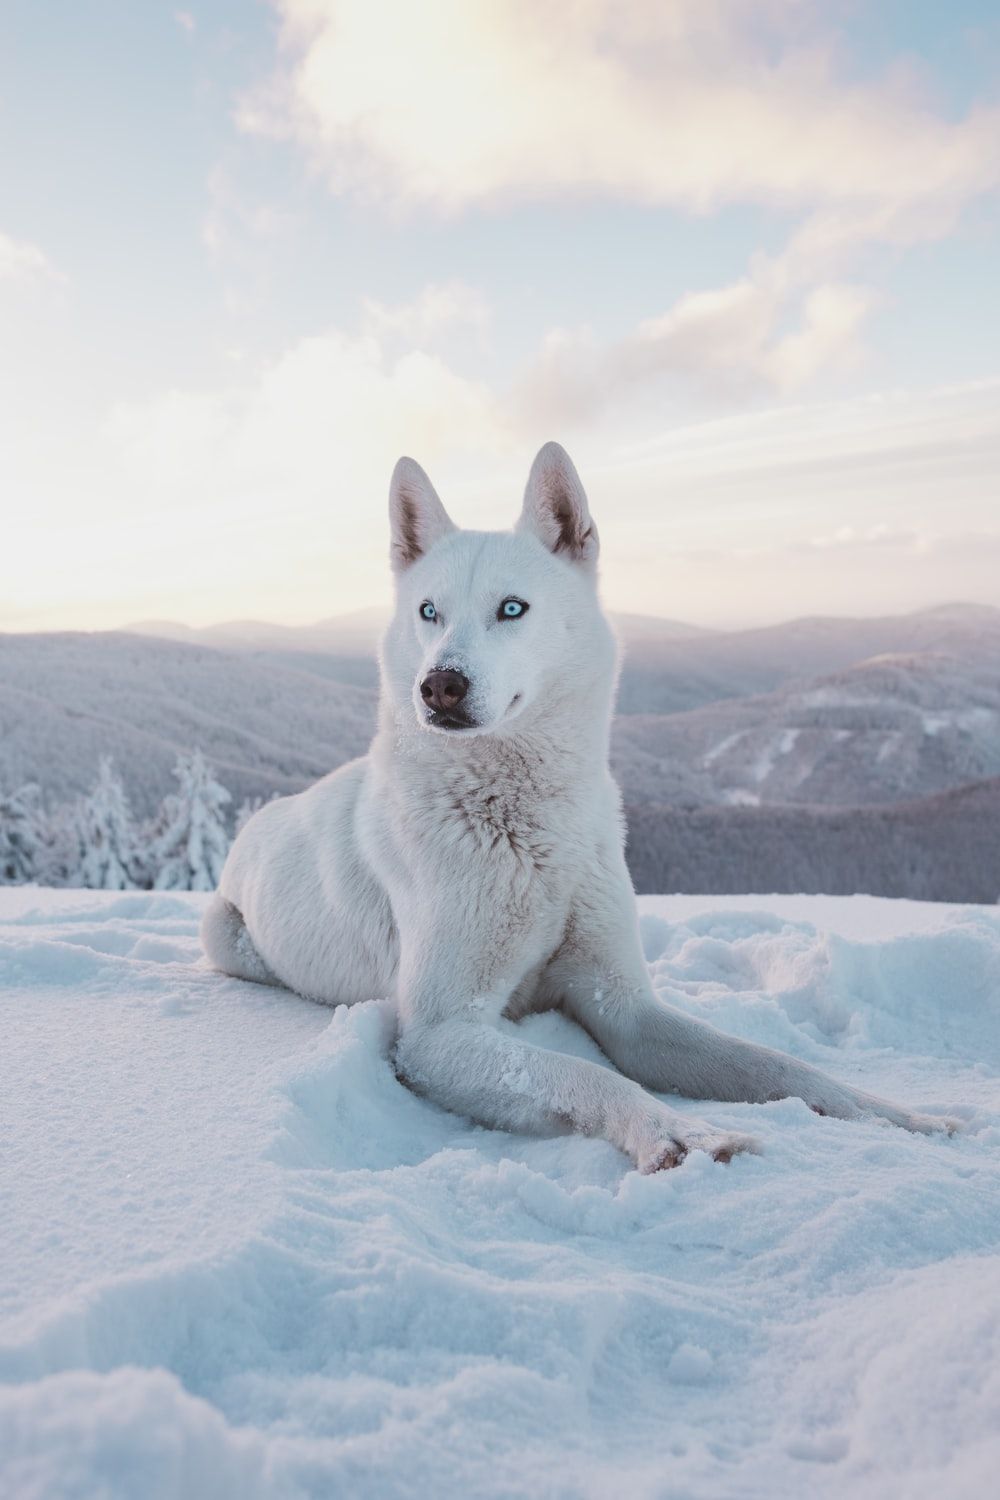  والپیپر فوق العاده زیبا از سگ هاسکی سفید بزرگ با چشمای آبی 